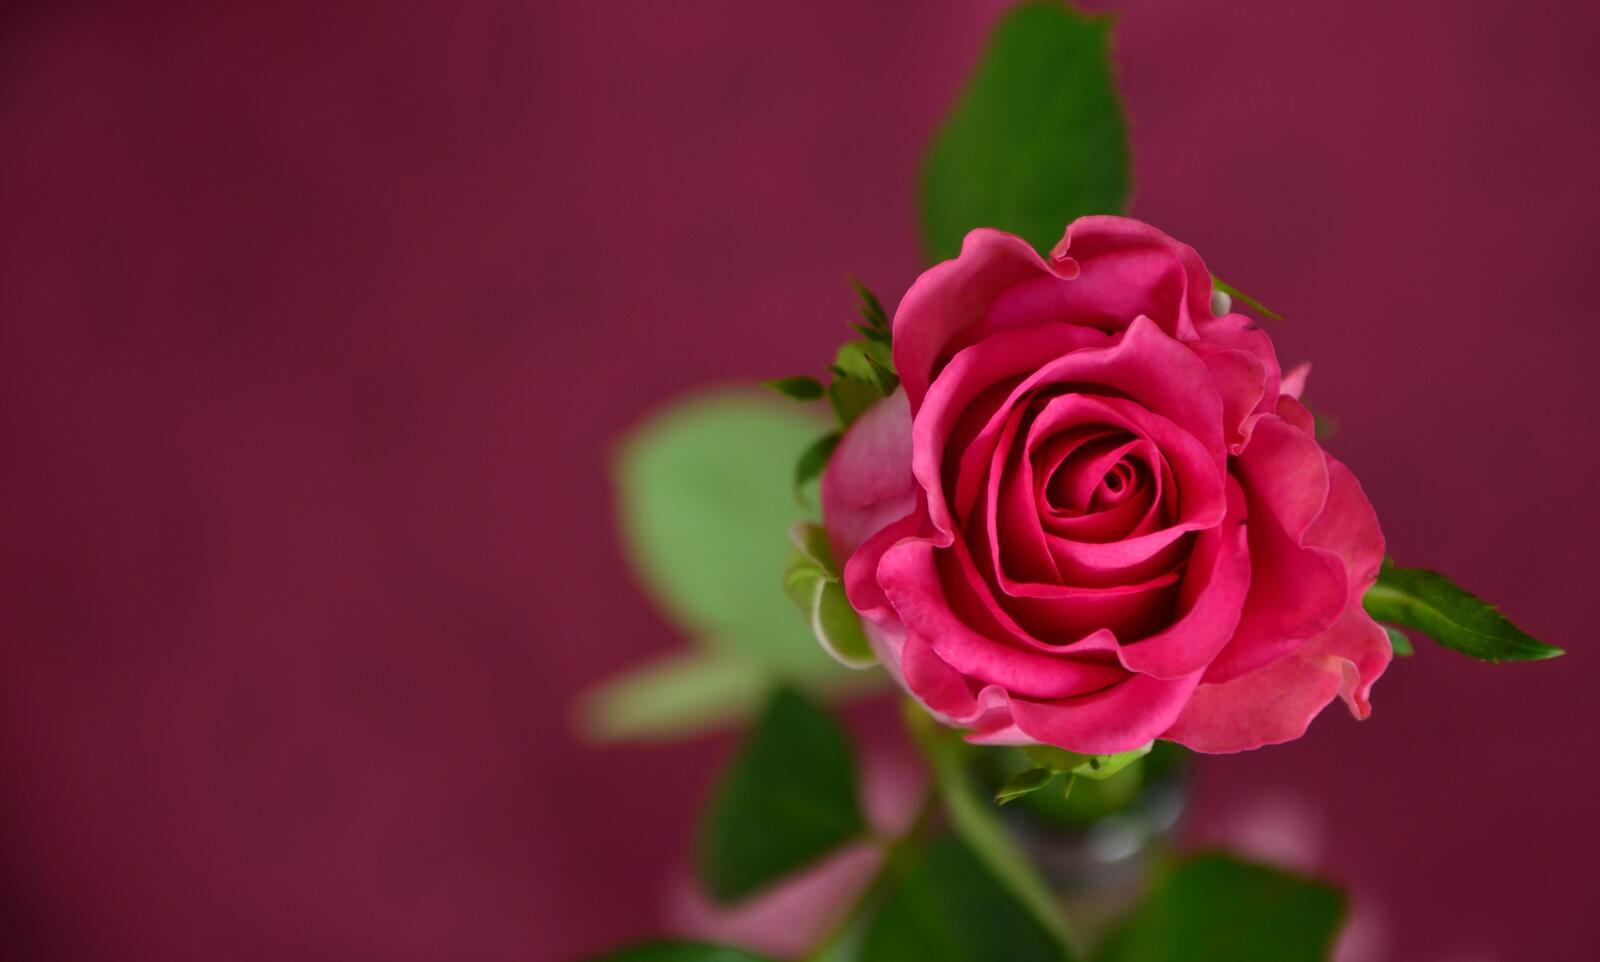 Бесплатное фото Одинокая розовая роза с зелеными листьями